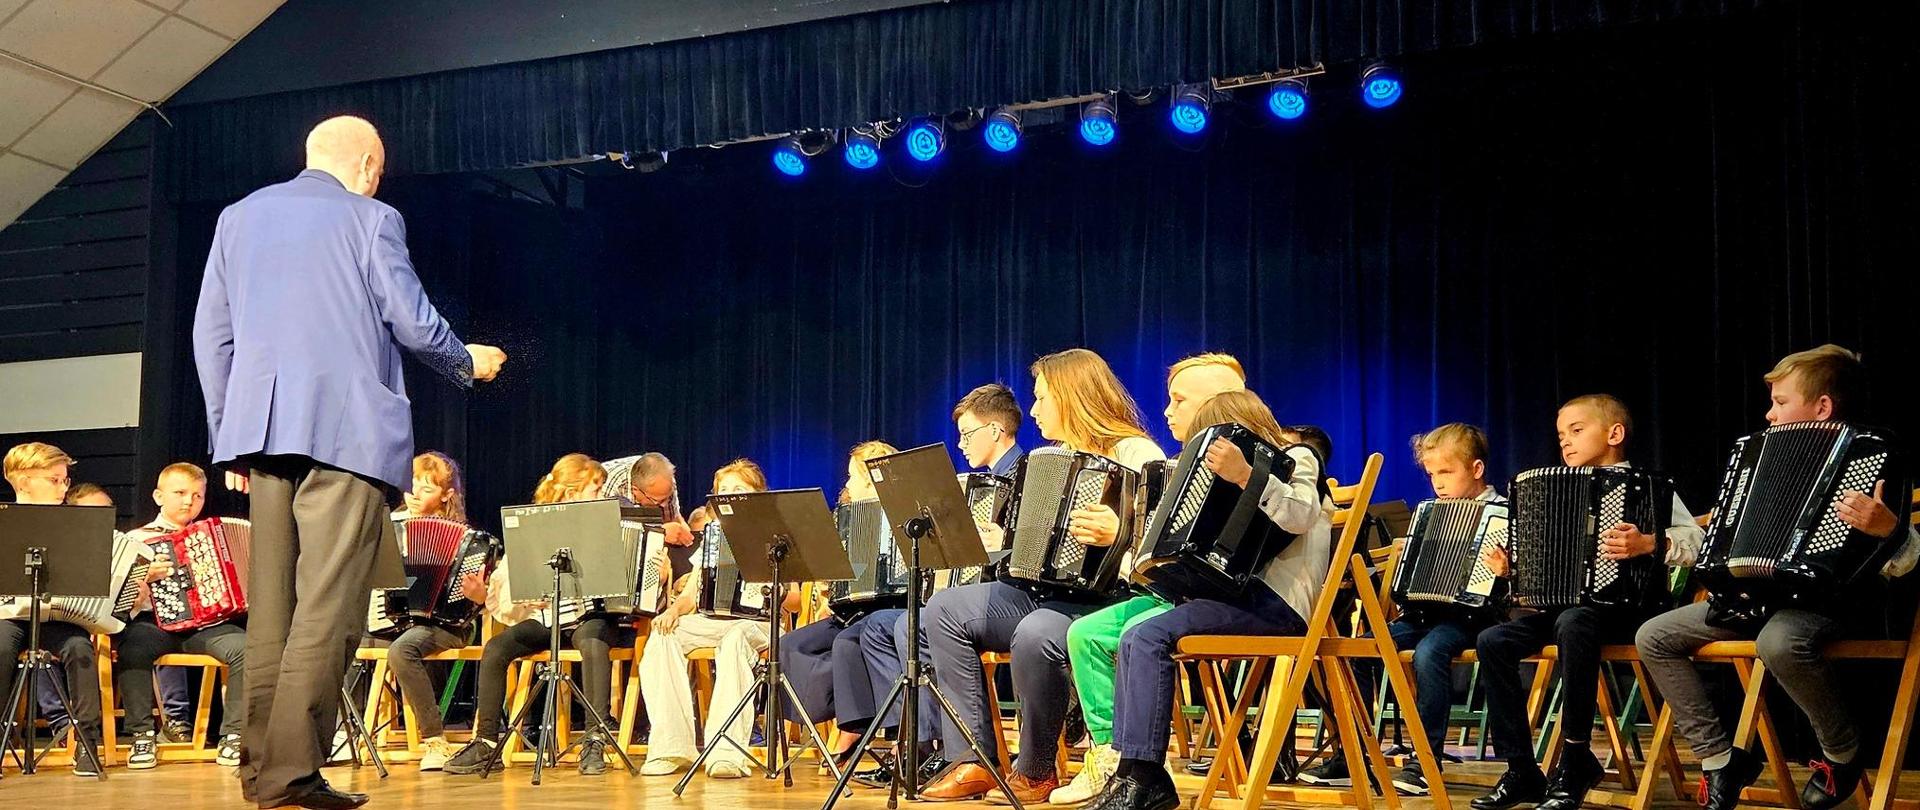 Zdjęcie przedstawiające wszystkich uczestników konkursu z akordeonami, podczas wspólnego wykonania "Ody do radości" Ludwiga van Beethovena.